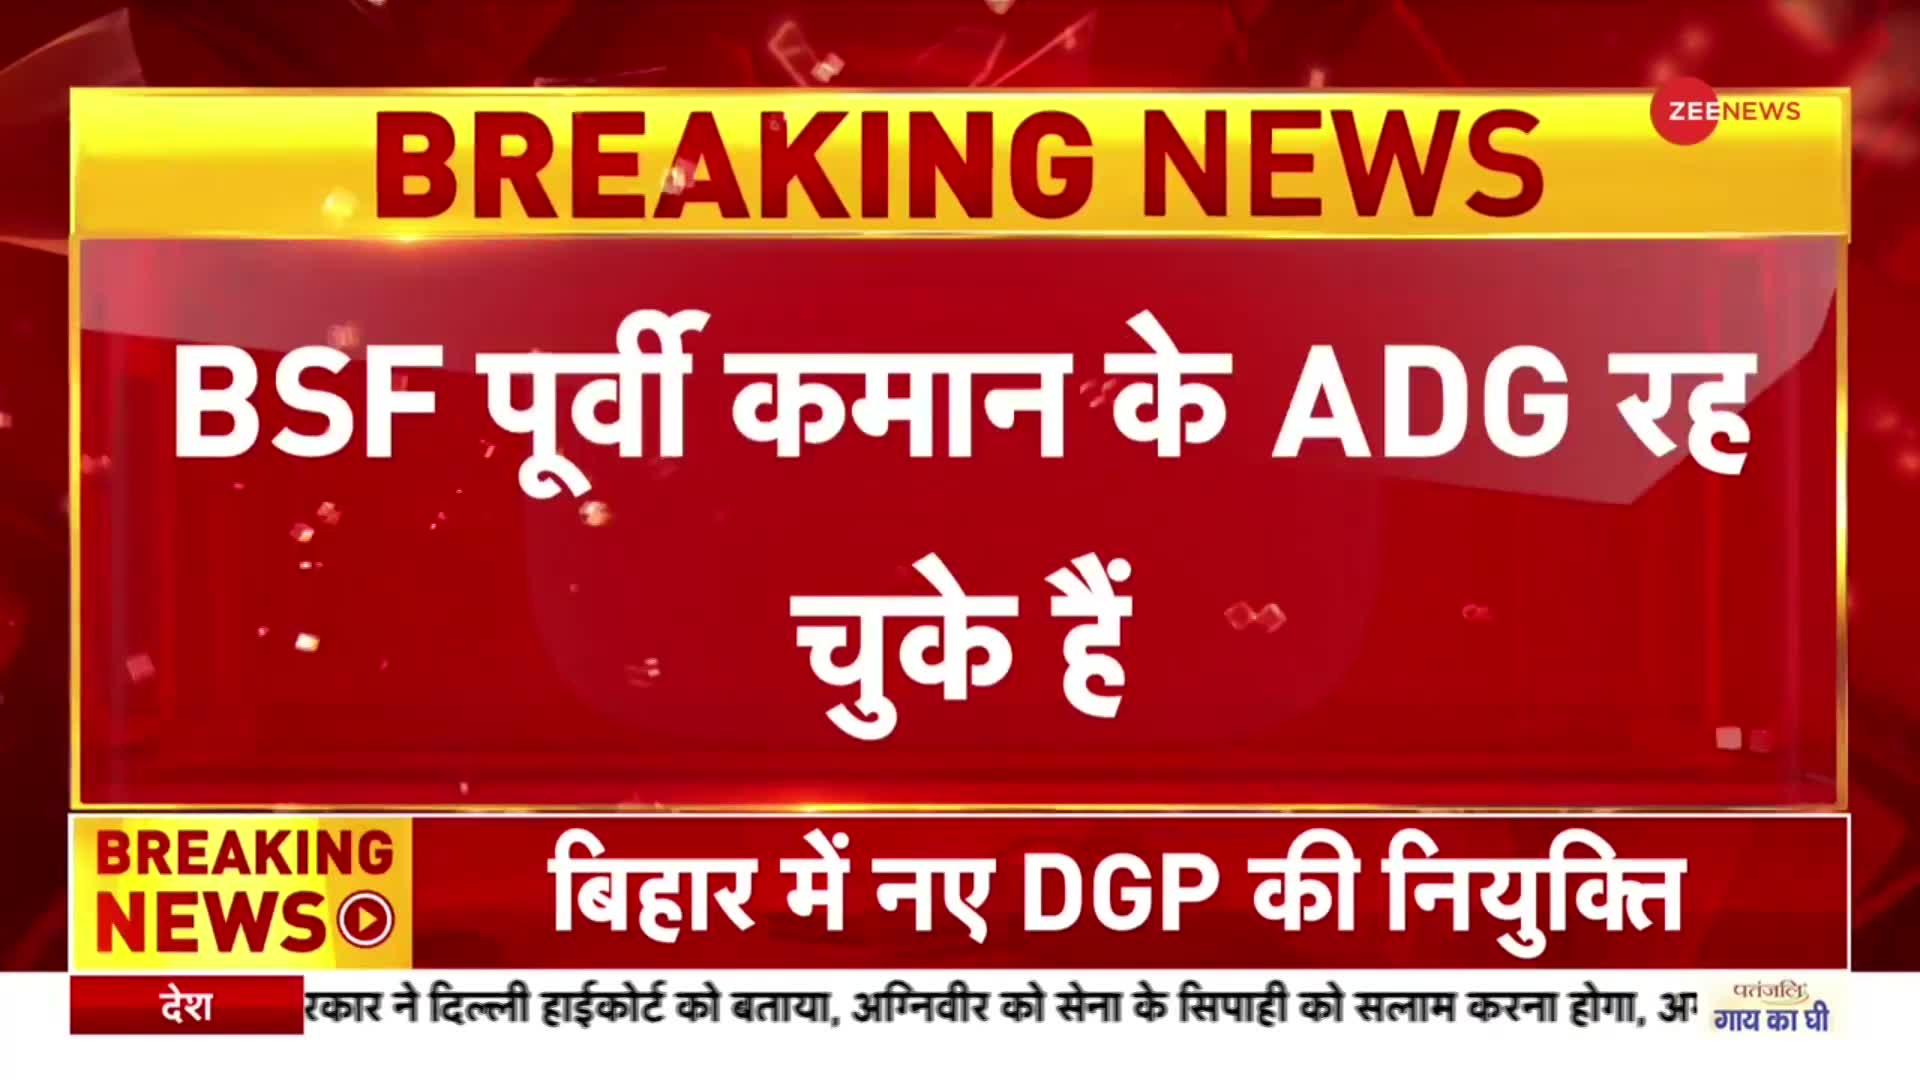 Bihar New DGP: बिहार के नए डीजीपी बने Rajwinder Singh Bhatti, BSF पूर्वी कमान के ADG रह चुके हैं